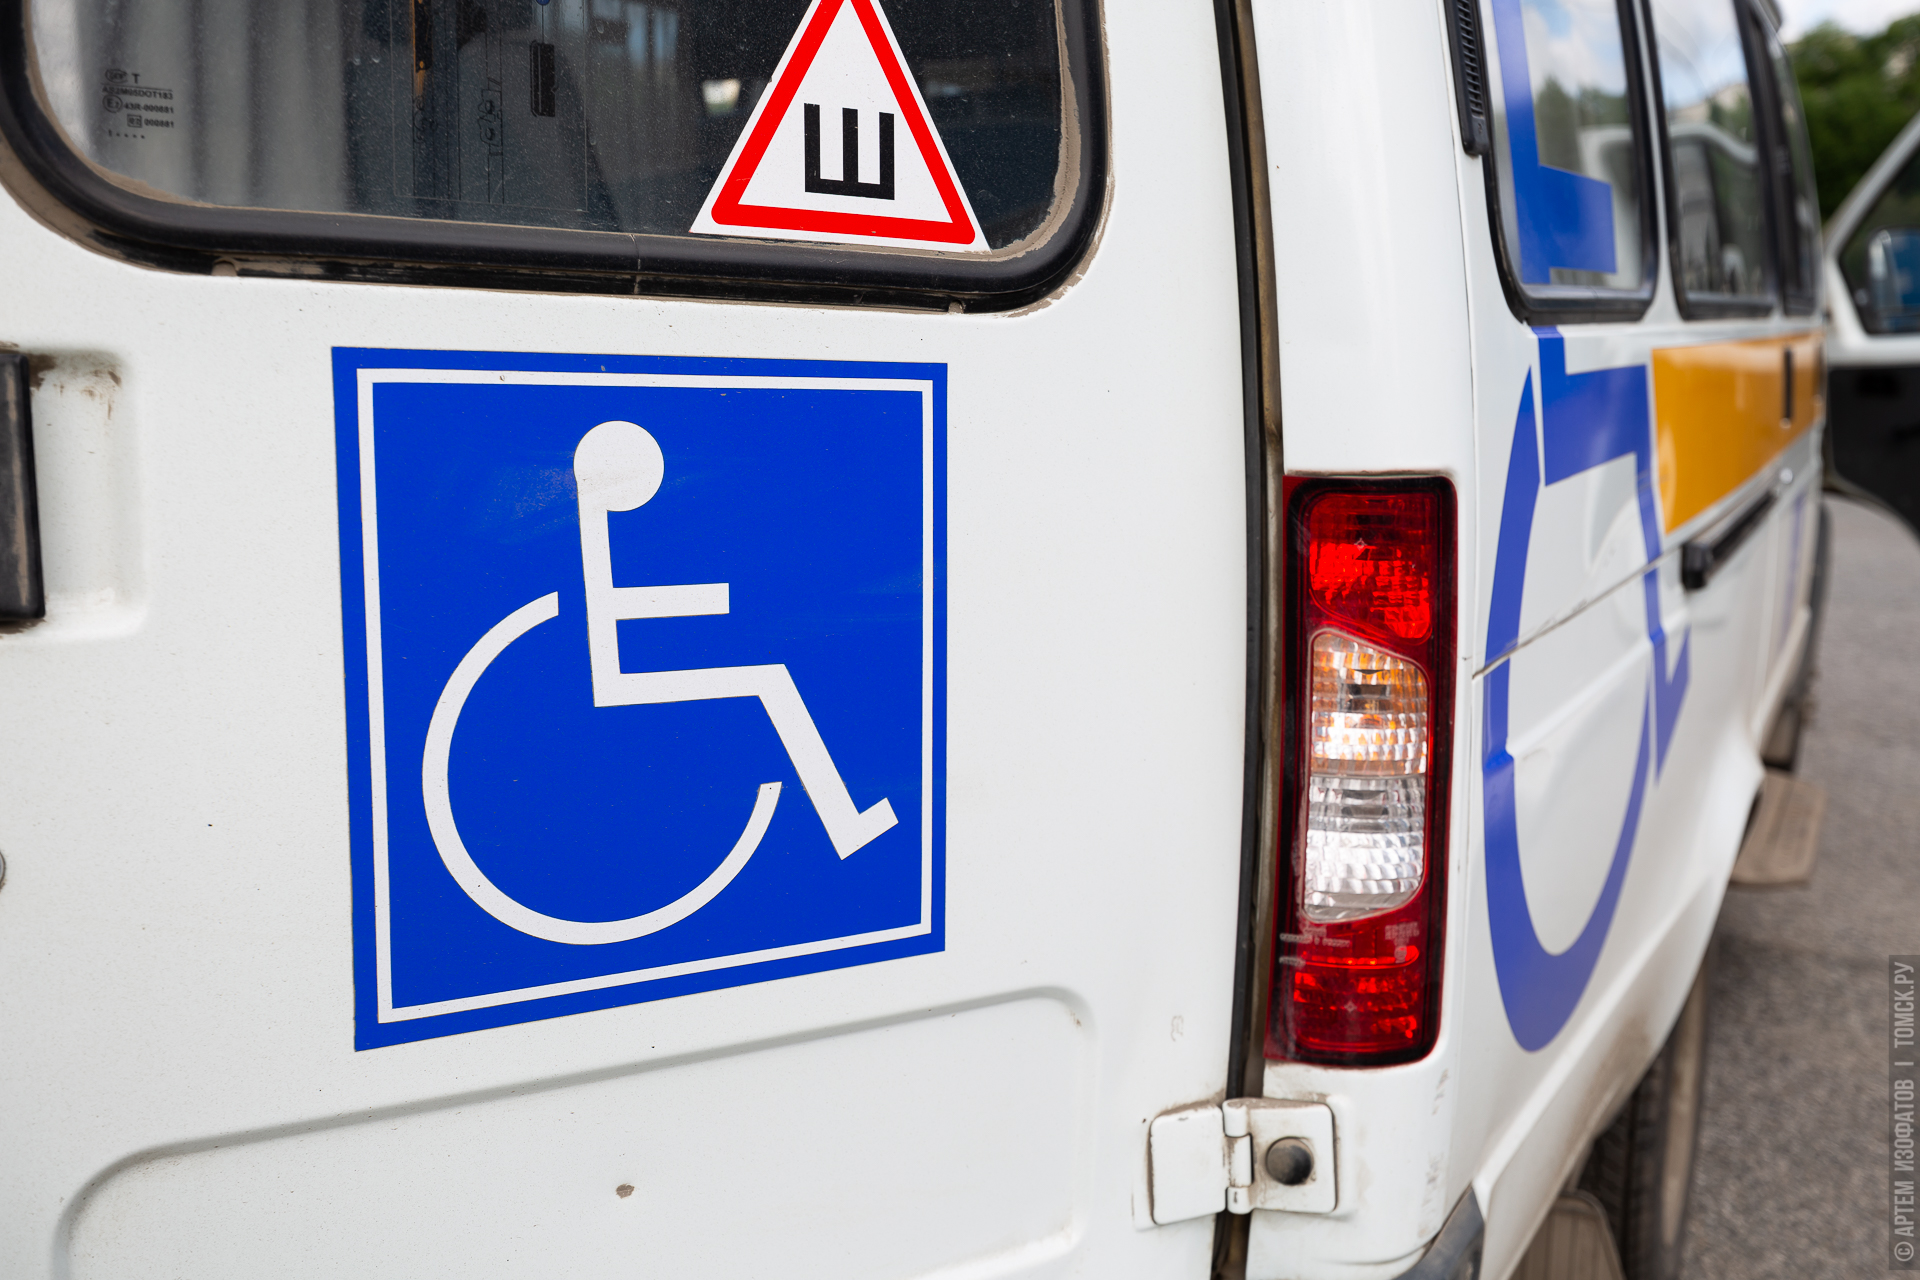 Автомобиль со знаком инвалид. Газель с знаком инвалид. Знак ручное управление автомобилем. Знак «инвалид». Социальное такси знак.